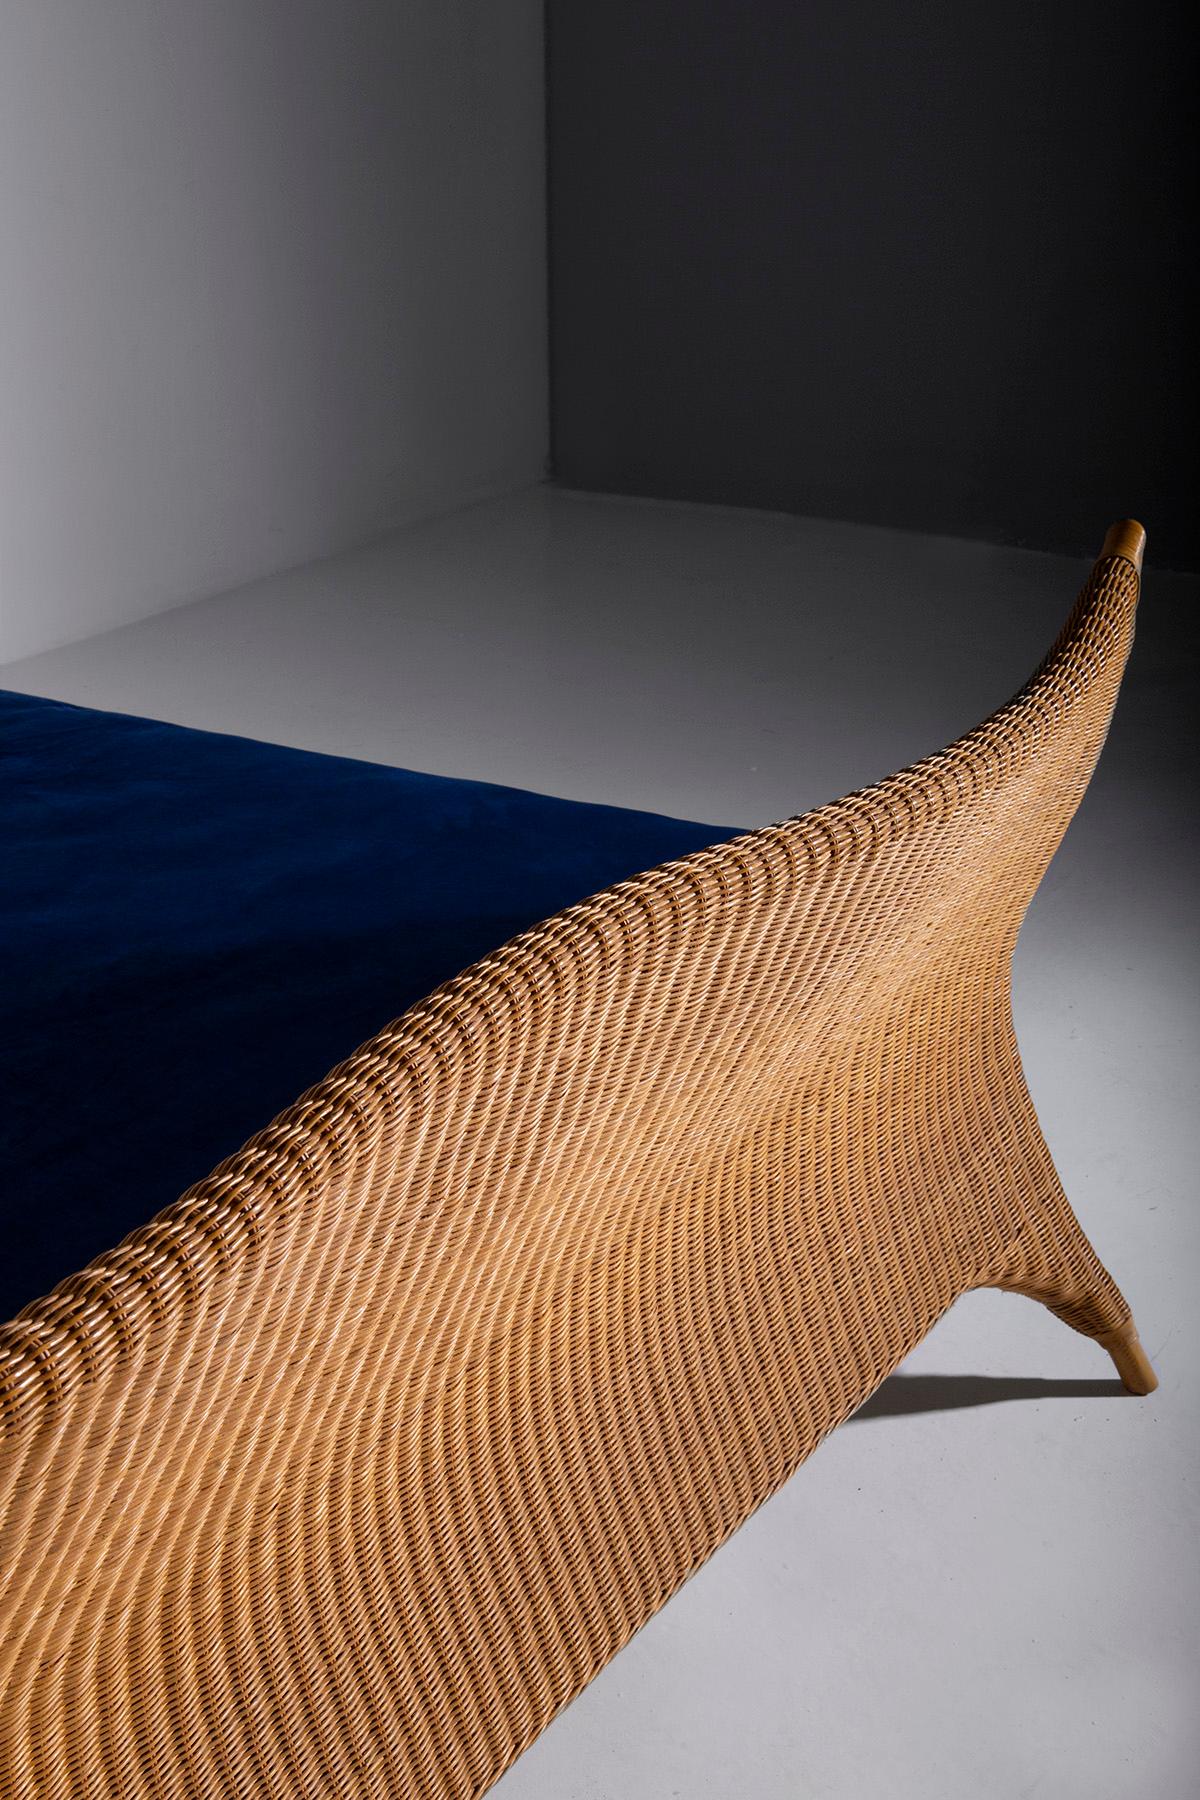 Italian rattan bed by PierAntonio Bonacina, with label 9